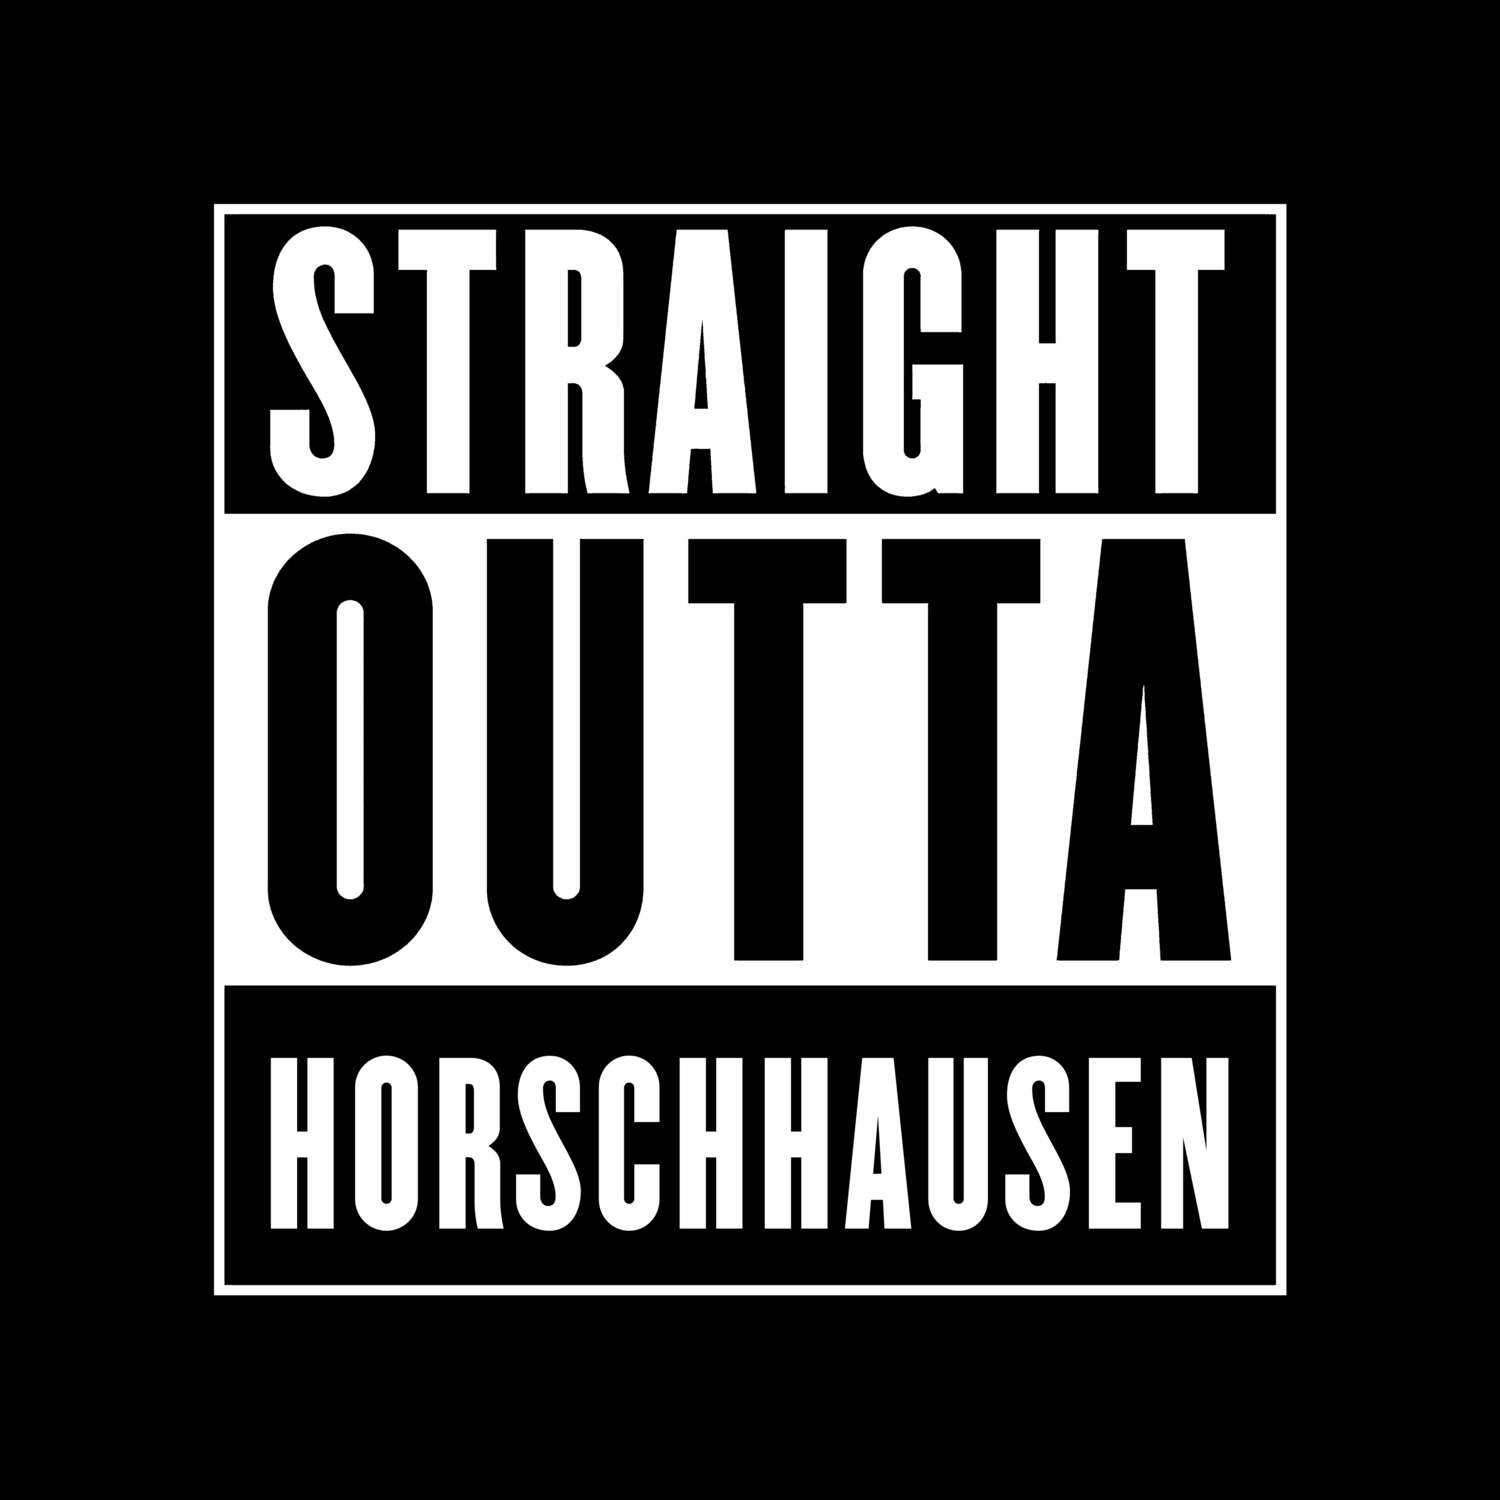 Horschhausen T-Shirt »Straight Outta«